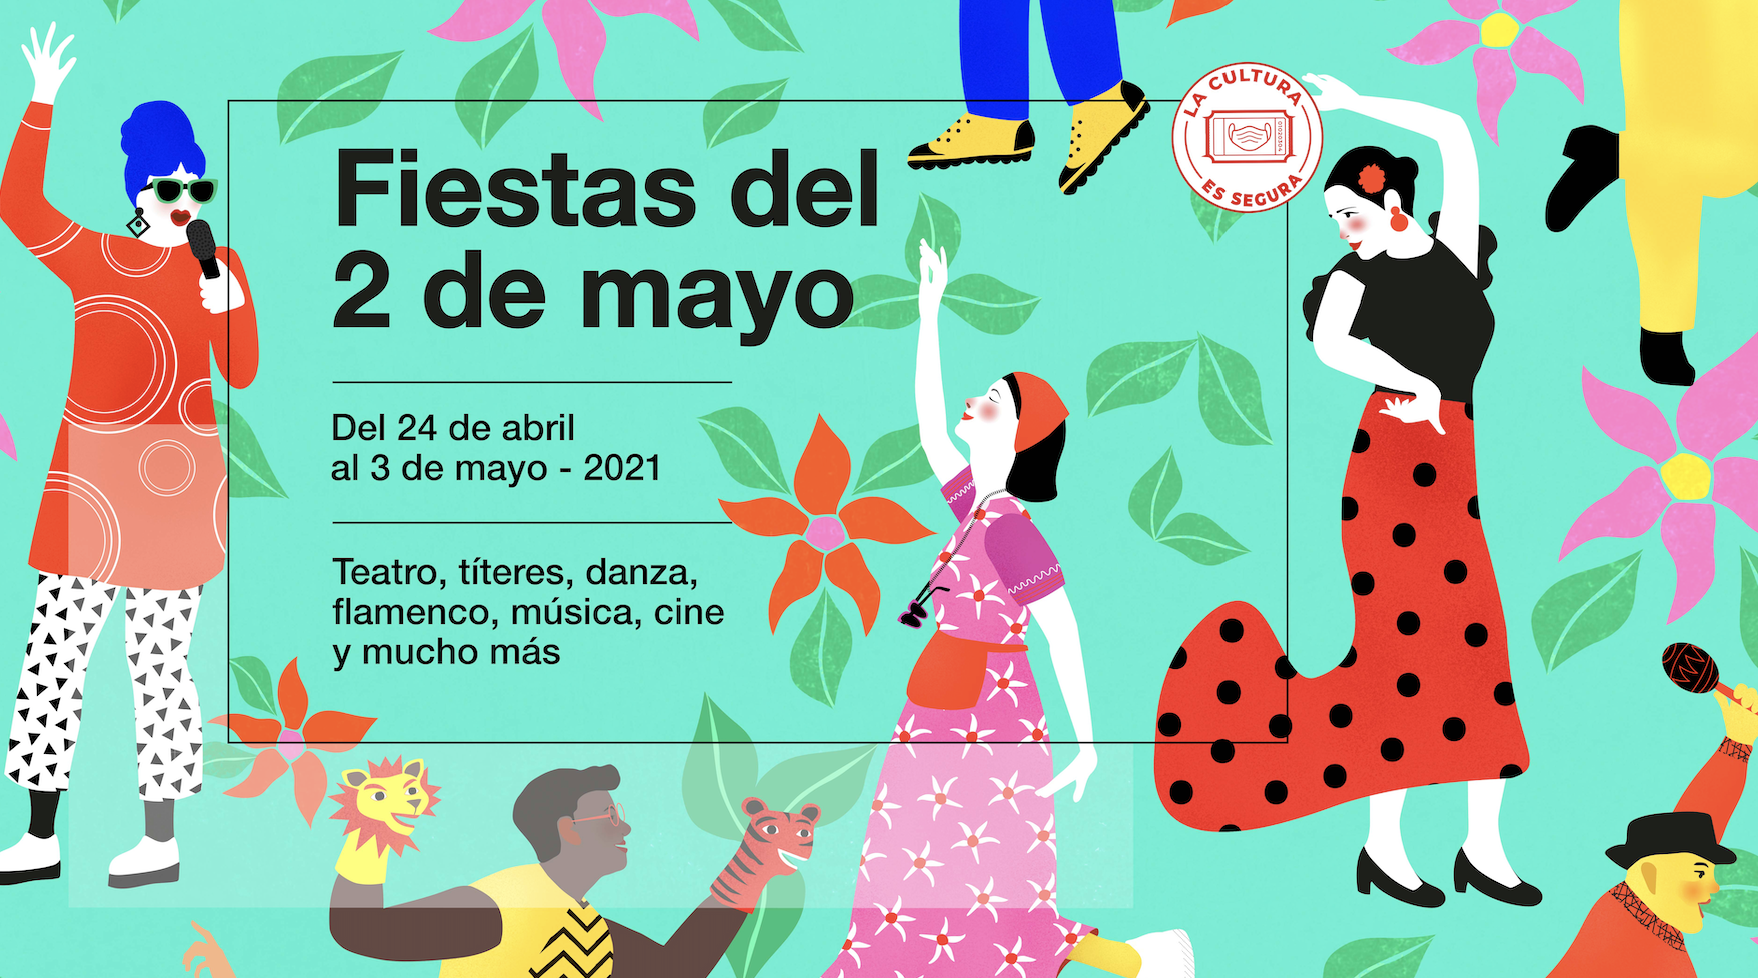 Entre el 30 de abril y el 2 de mayo, la Comunidad de Madrid traerá una variada oferta cultural